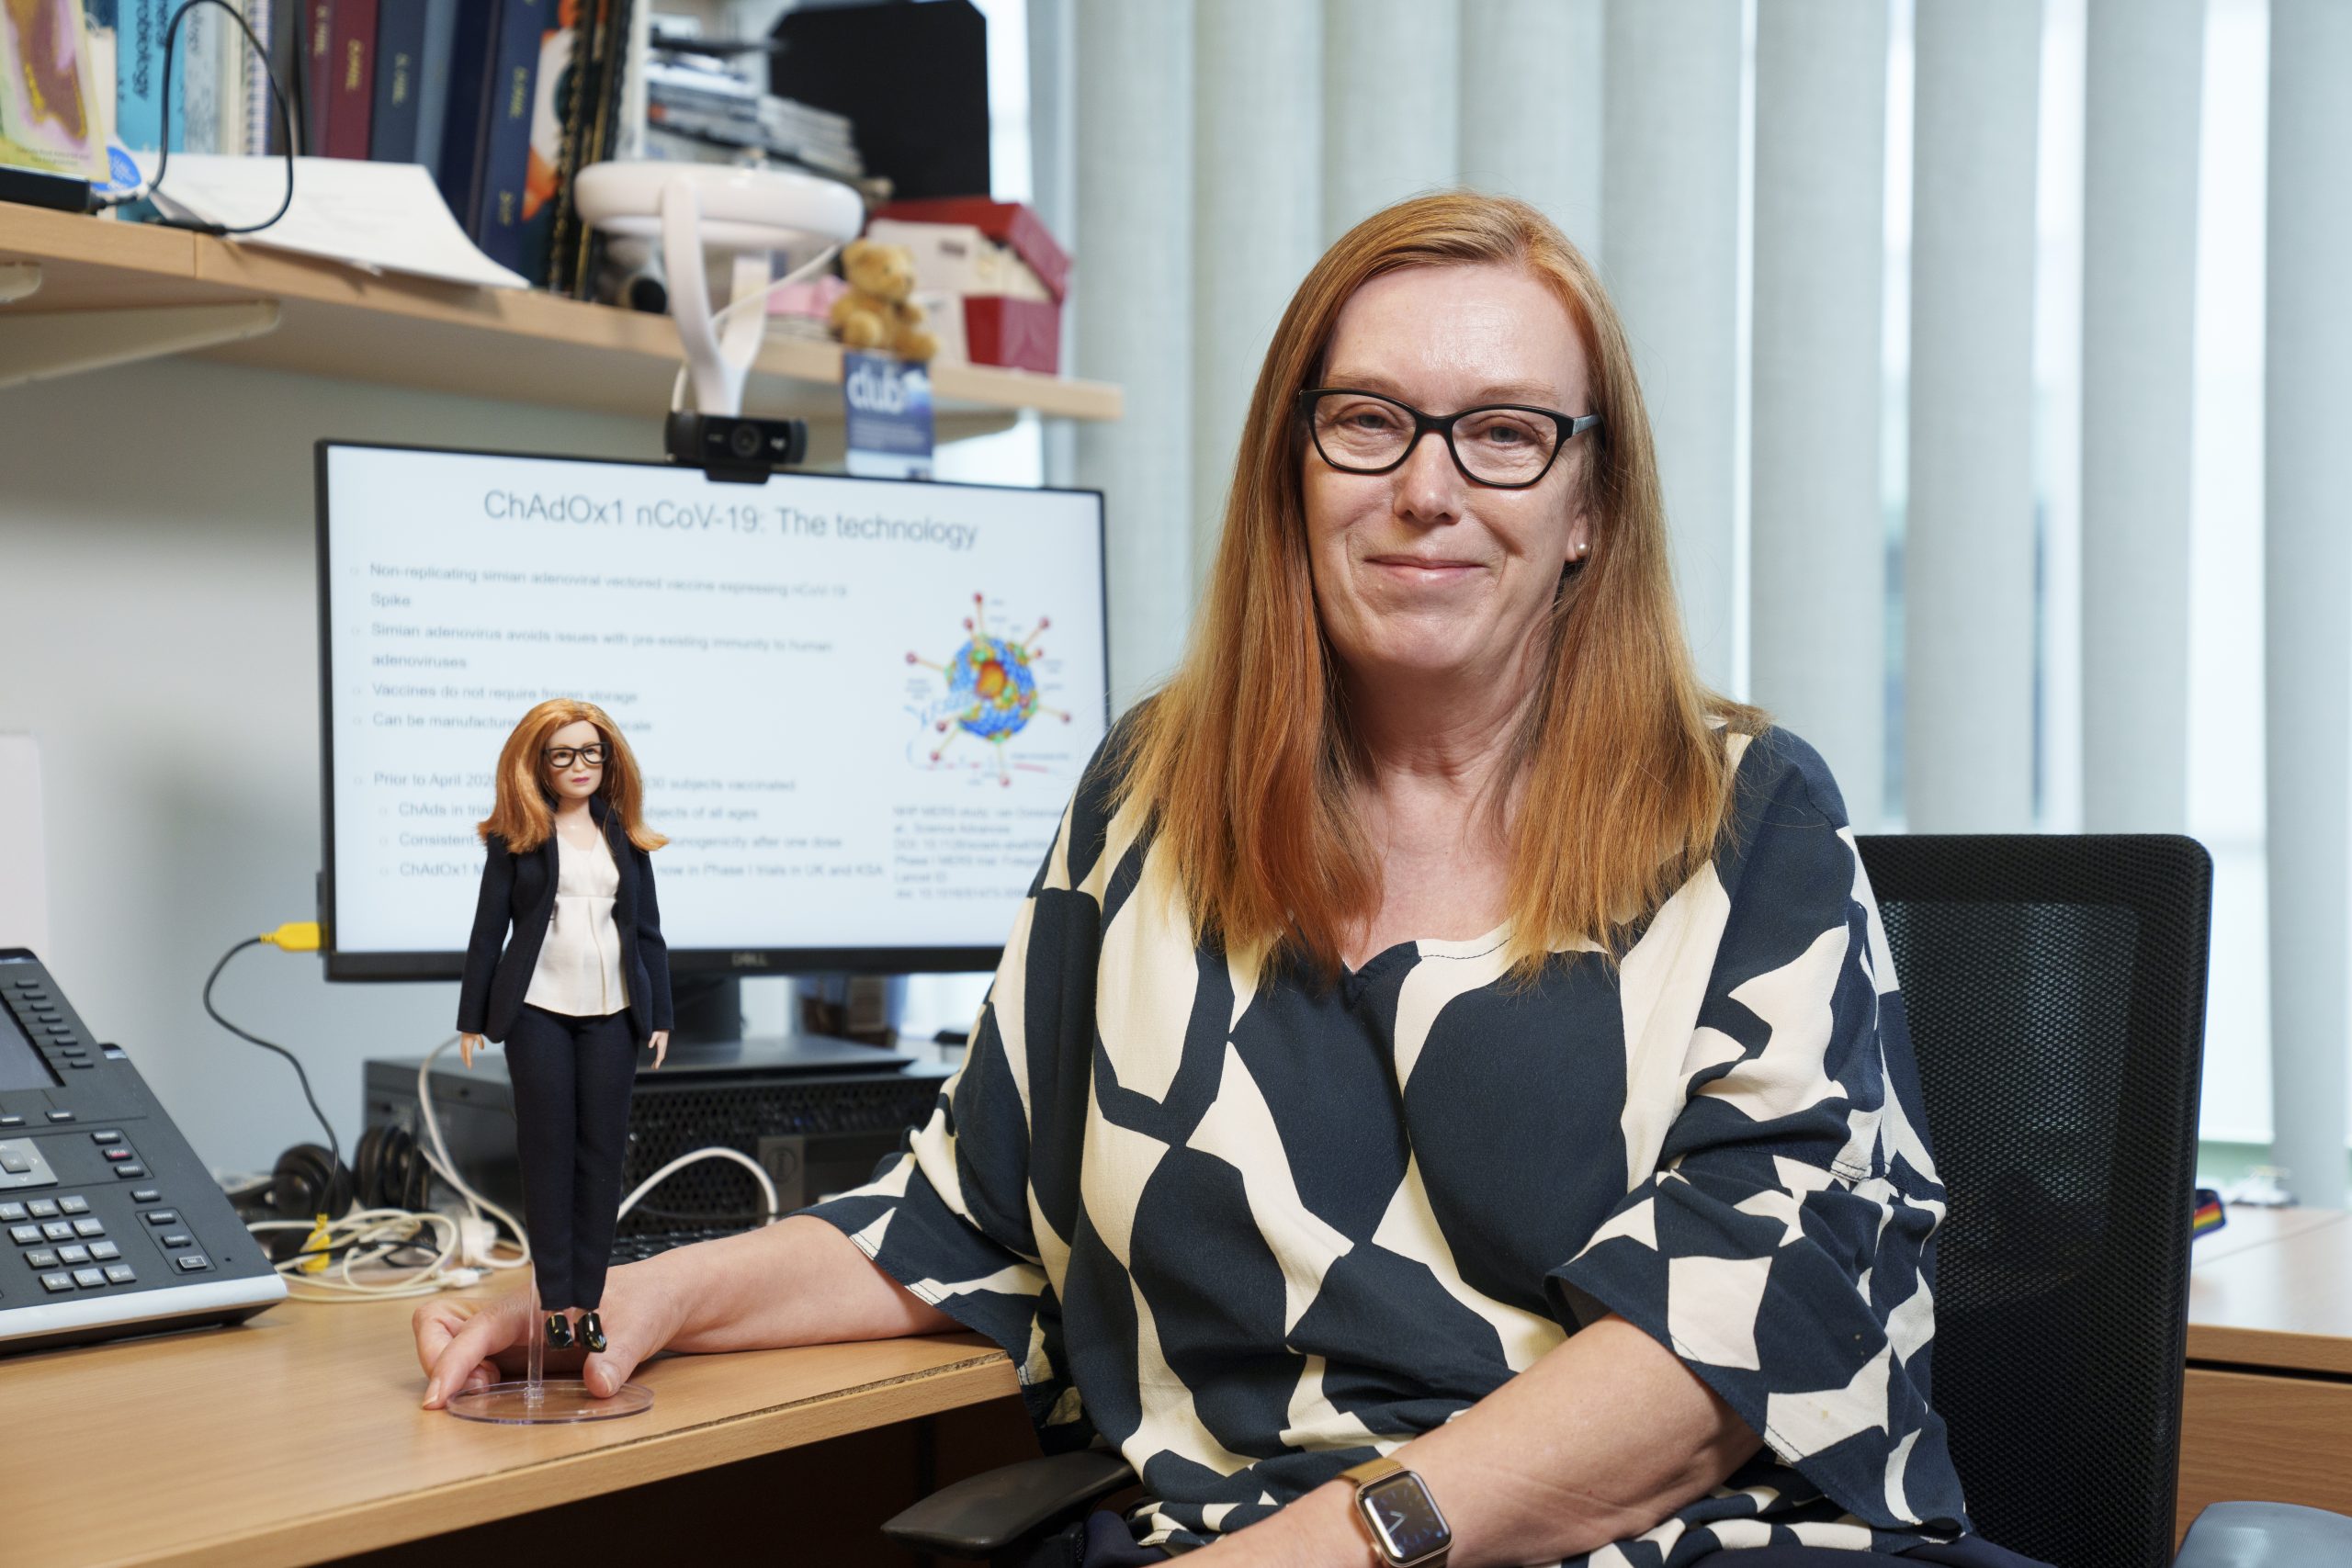 Professorin Dame Sarah Gilbert mit einer ihr zu Ehren hergestellte Barbie-Puppe von Mattel an einem Schreibtisch.